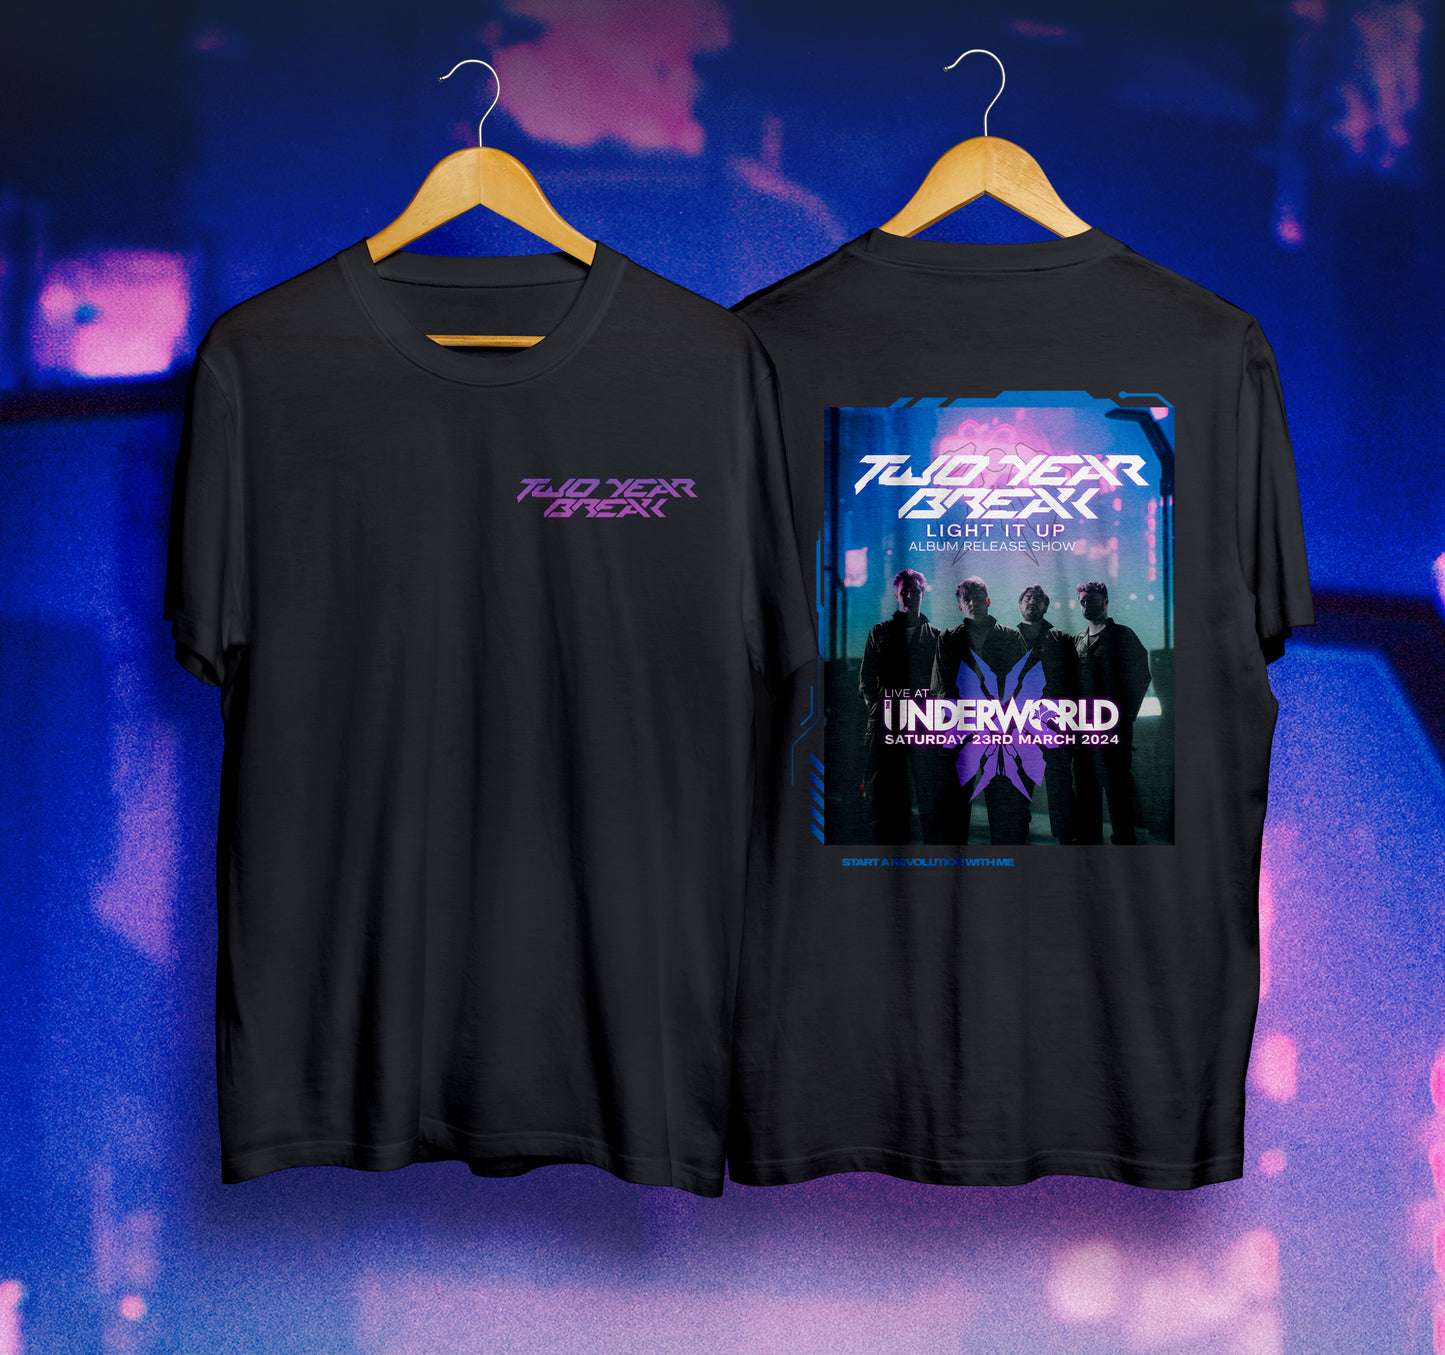 "Underworld" T-Shirt (Light It Up release show)